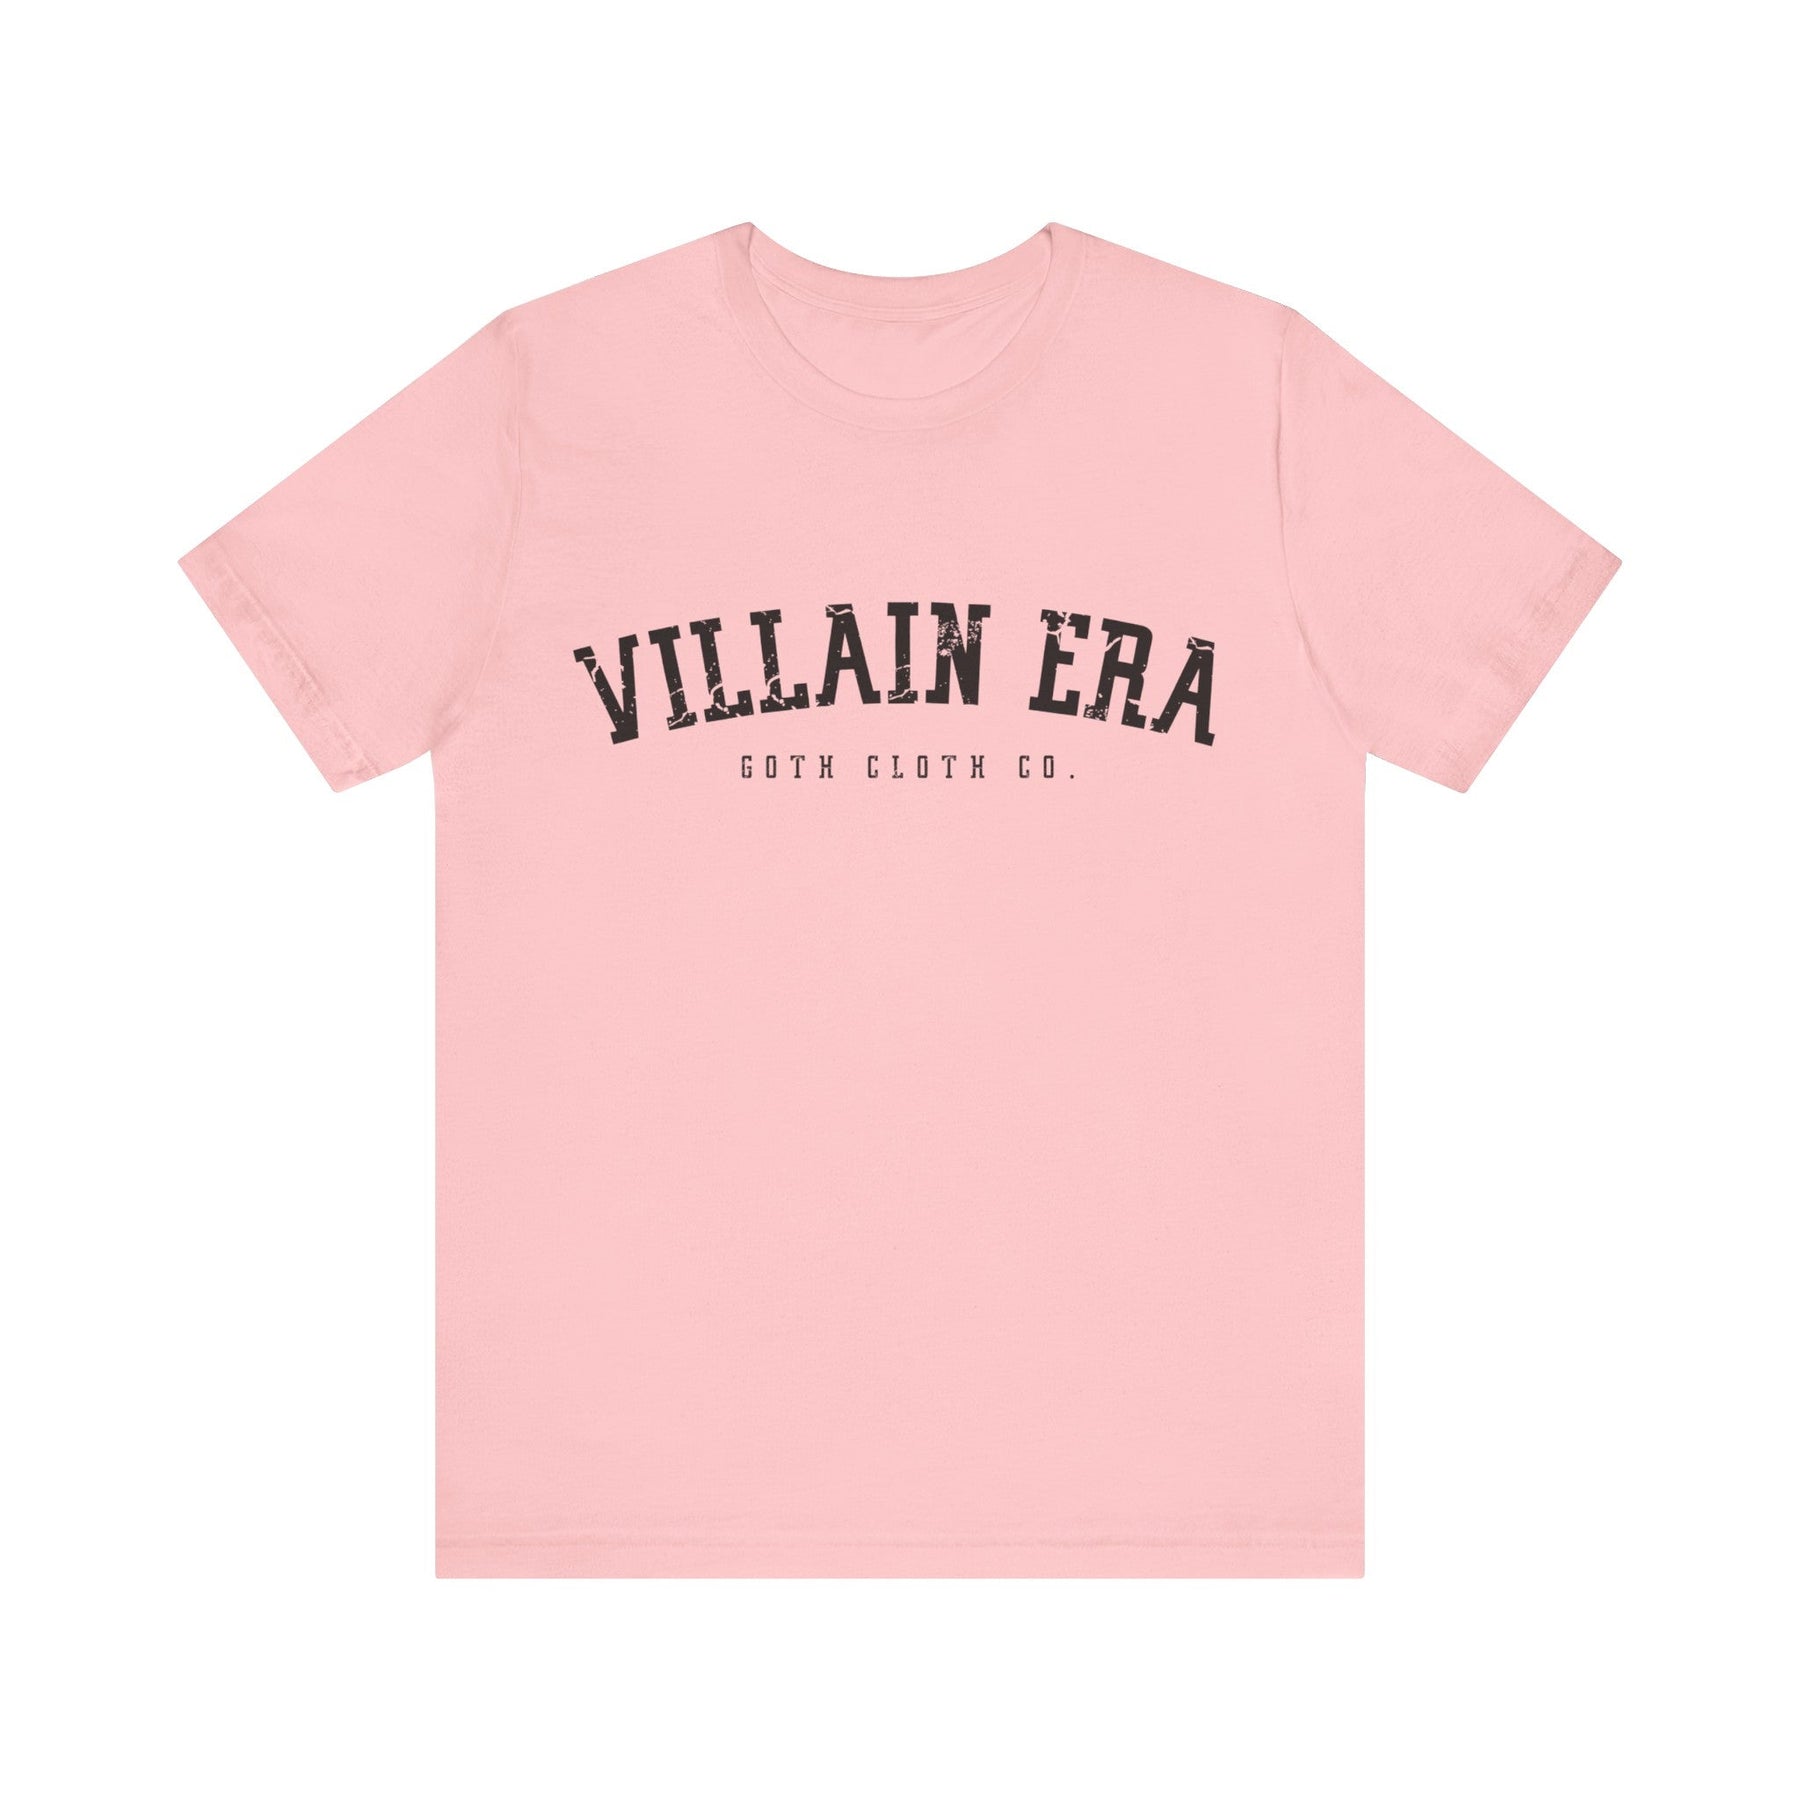 Villain Era Short Sleeve Tee - Goth Cloth Co.T - Shirt12334316944149565166